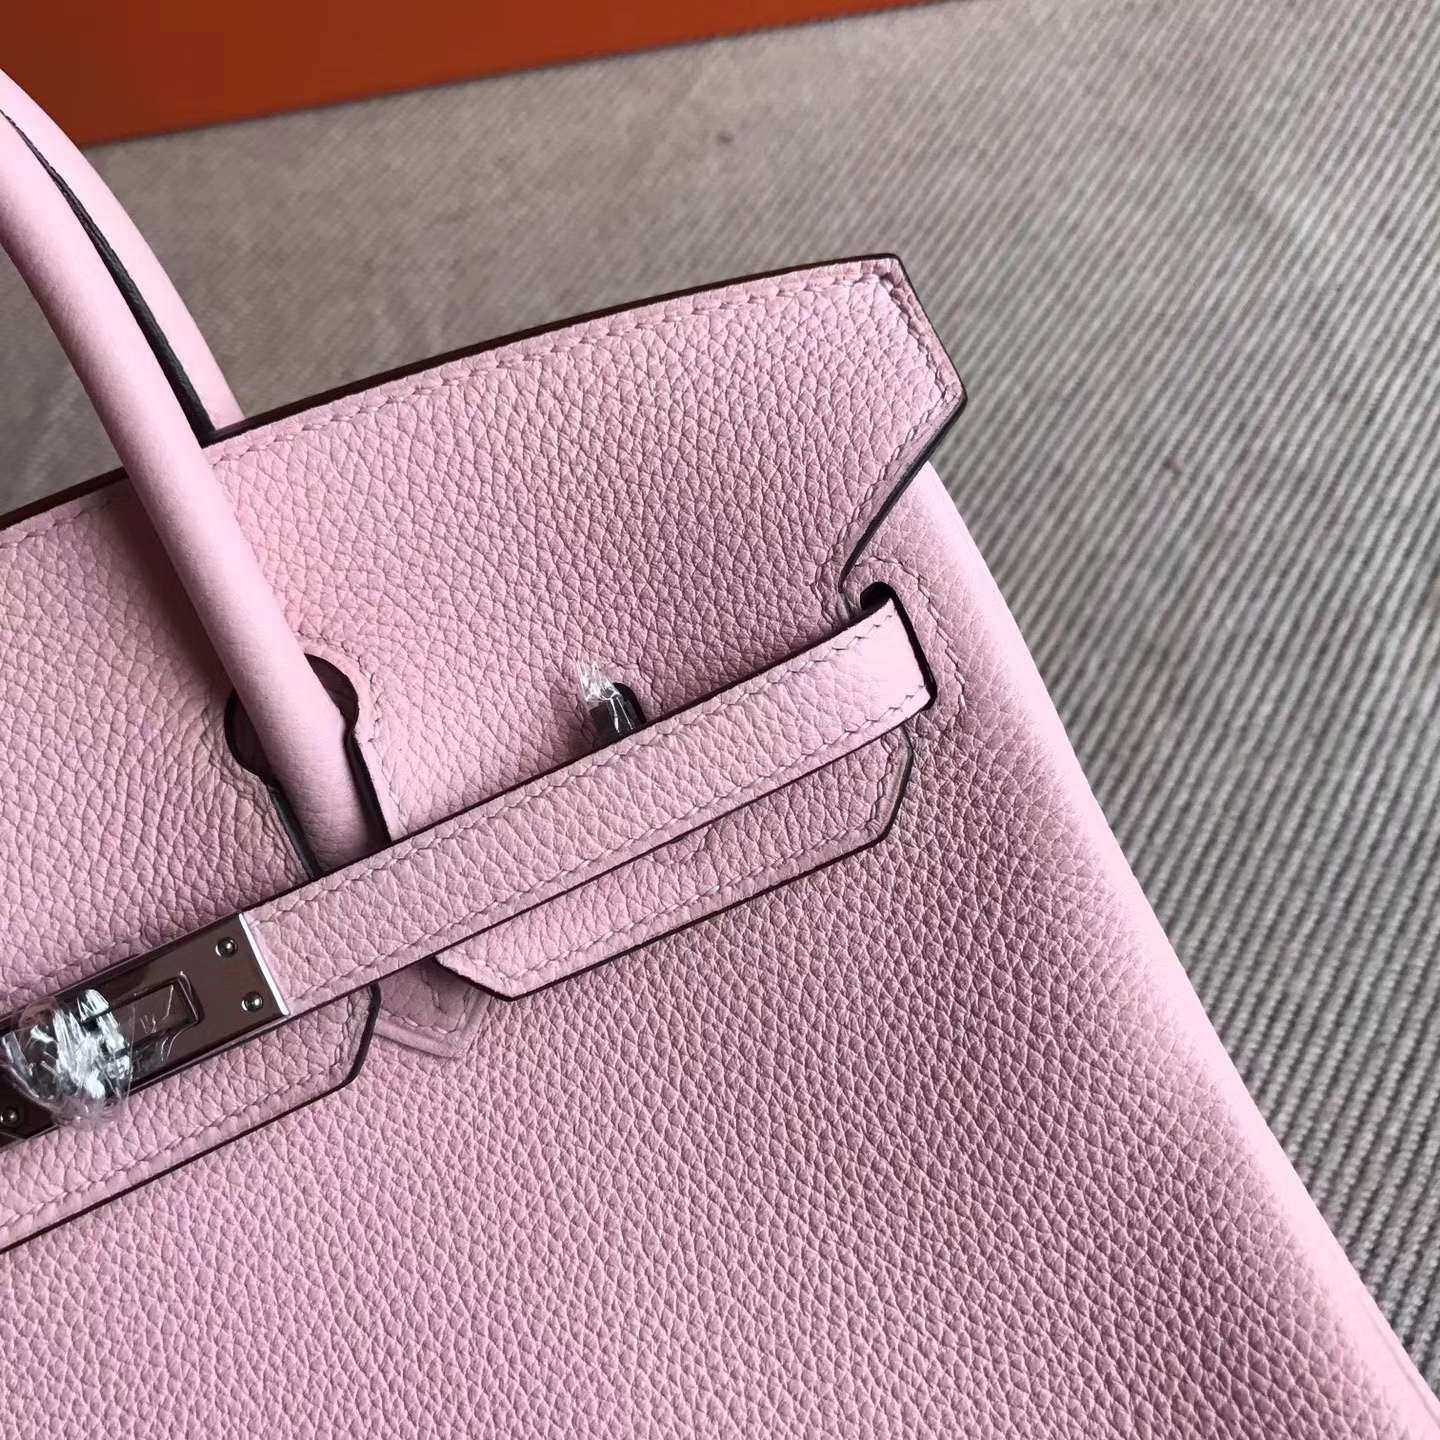 Wholesale Hermes 3Q New Pink Togo Leather Birkin Bag25cm Silver Hardware